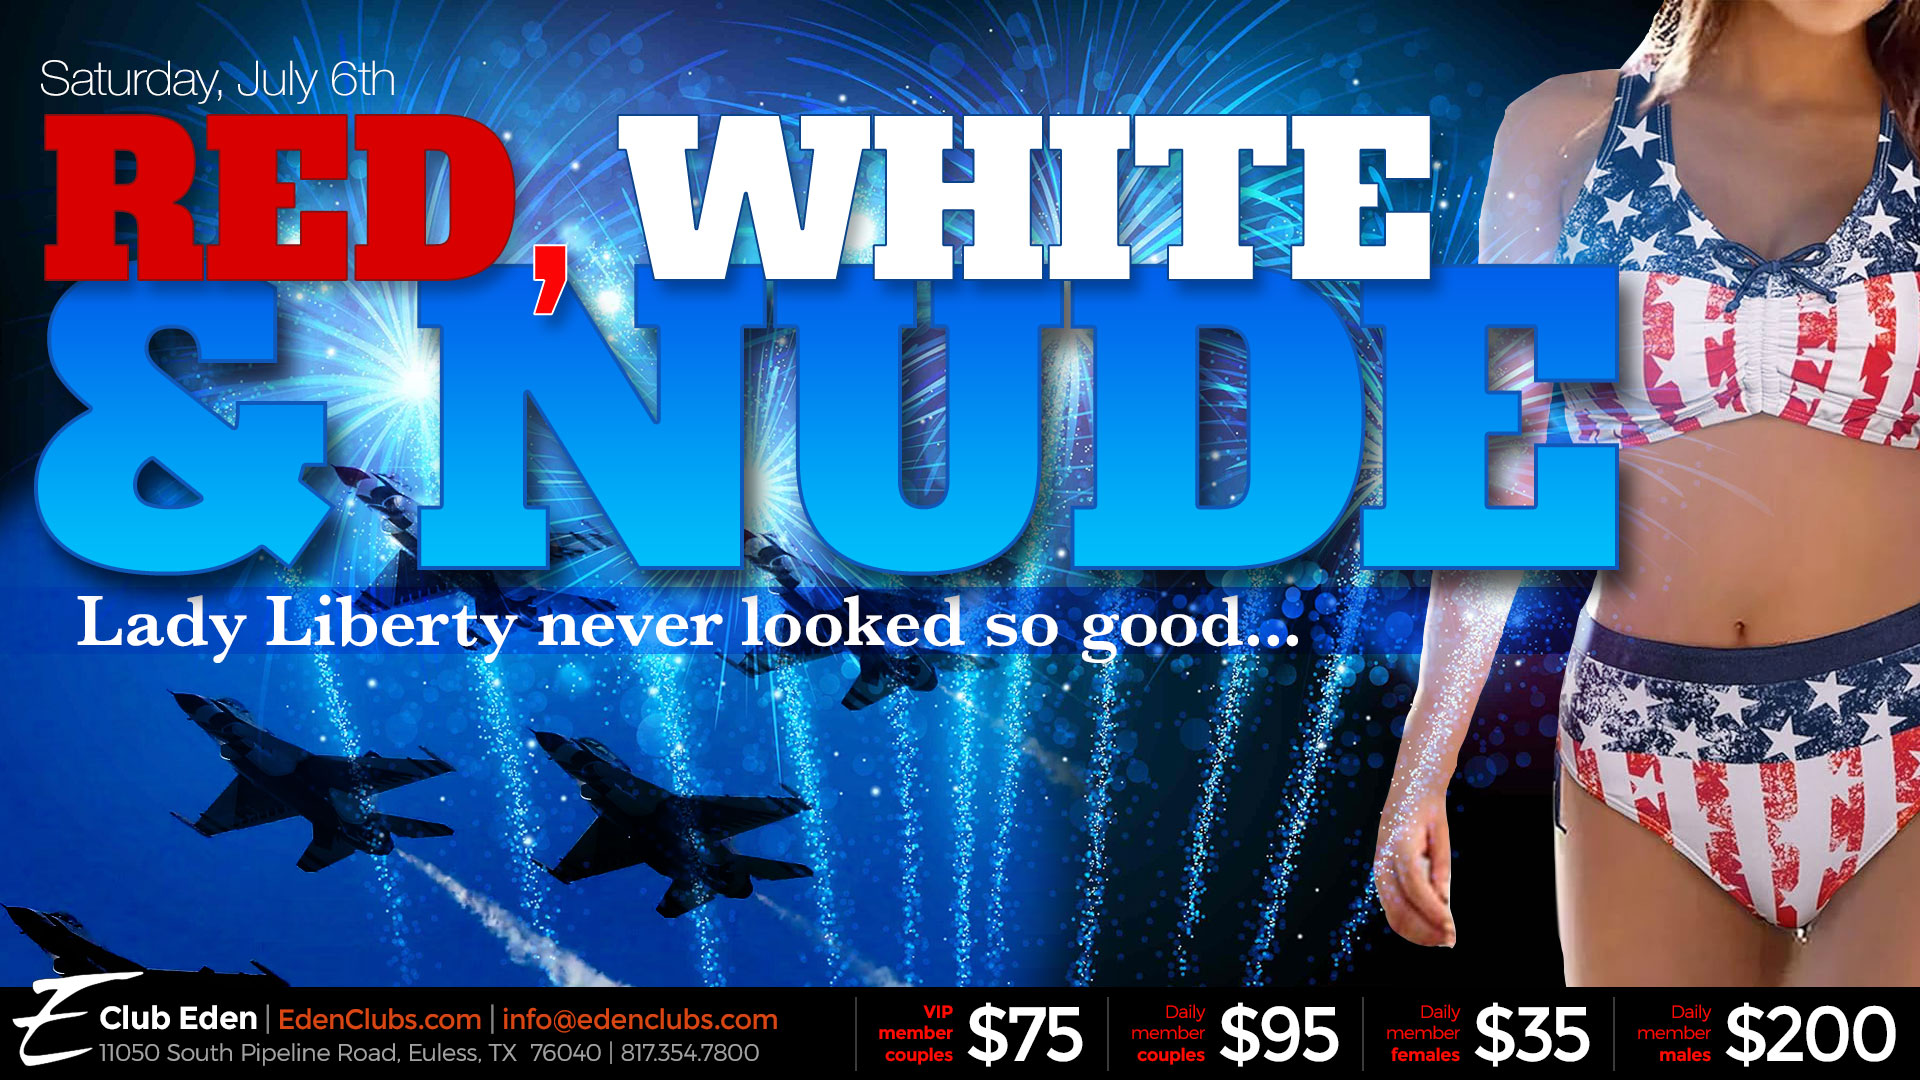 070624-Red-White-Nude-eden-dfw-tv